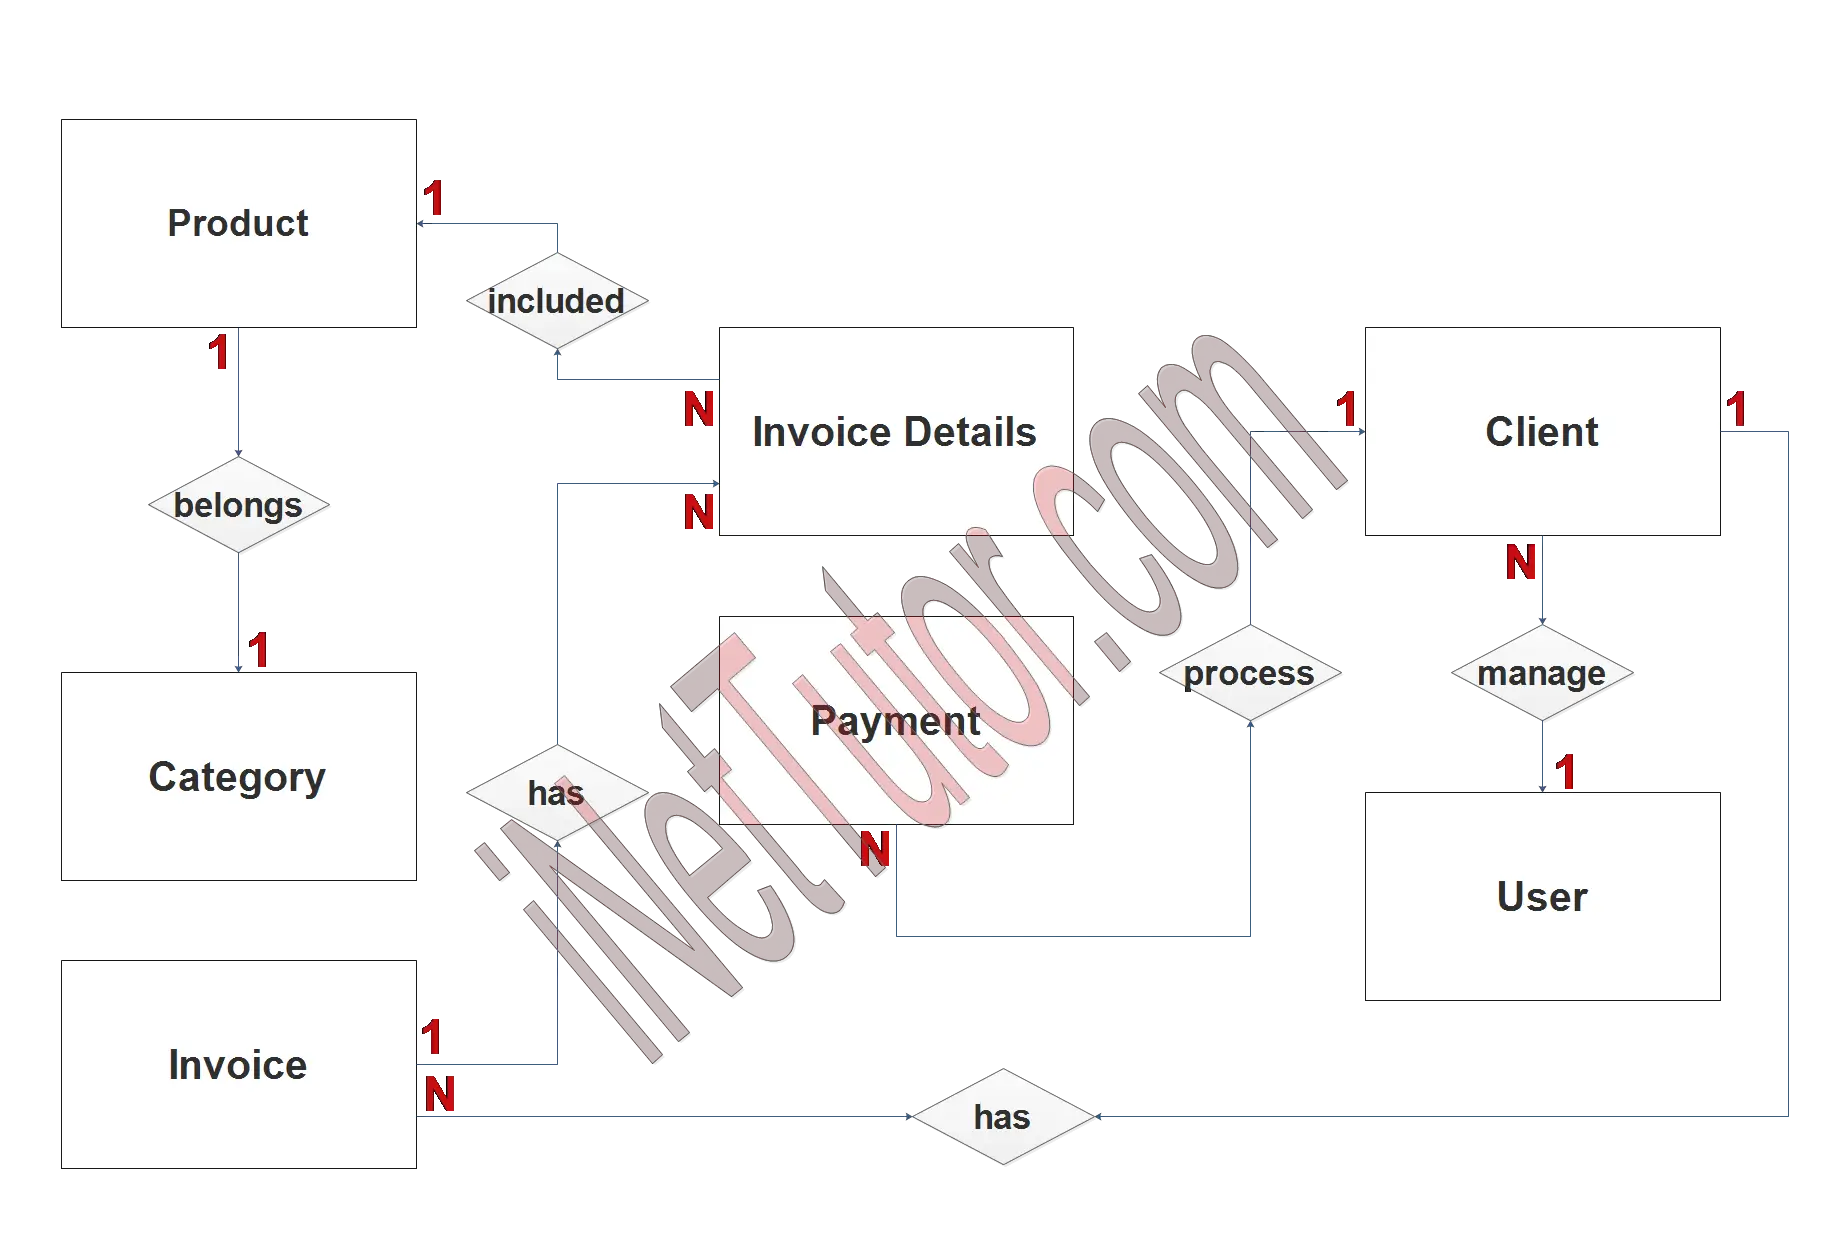 Invoice Management System ER Diagram - Step 2 Table Relationship